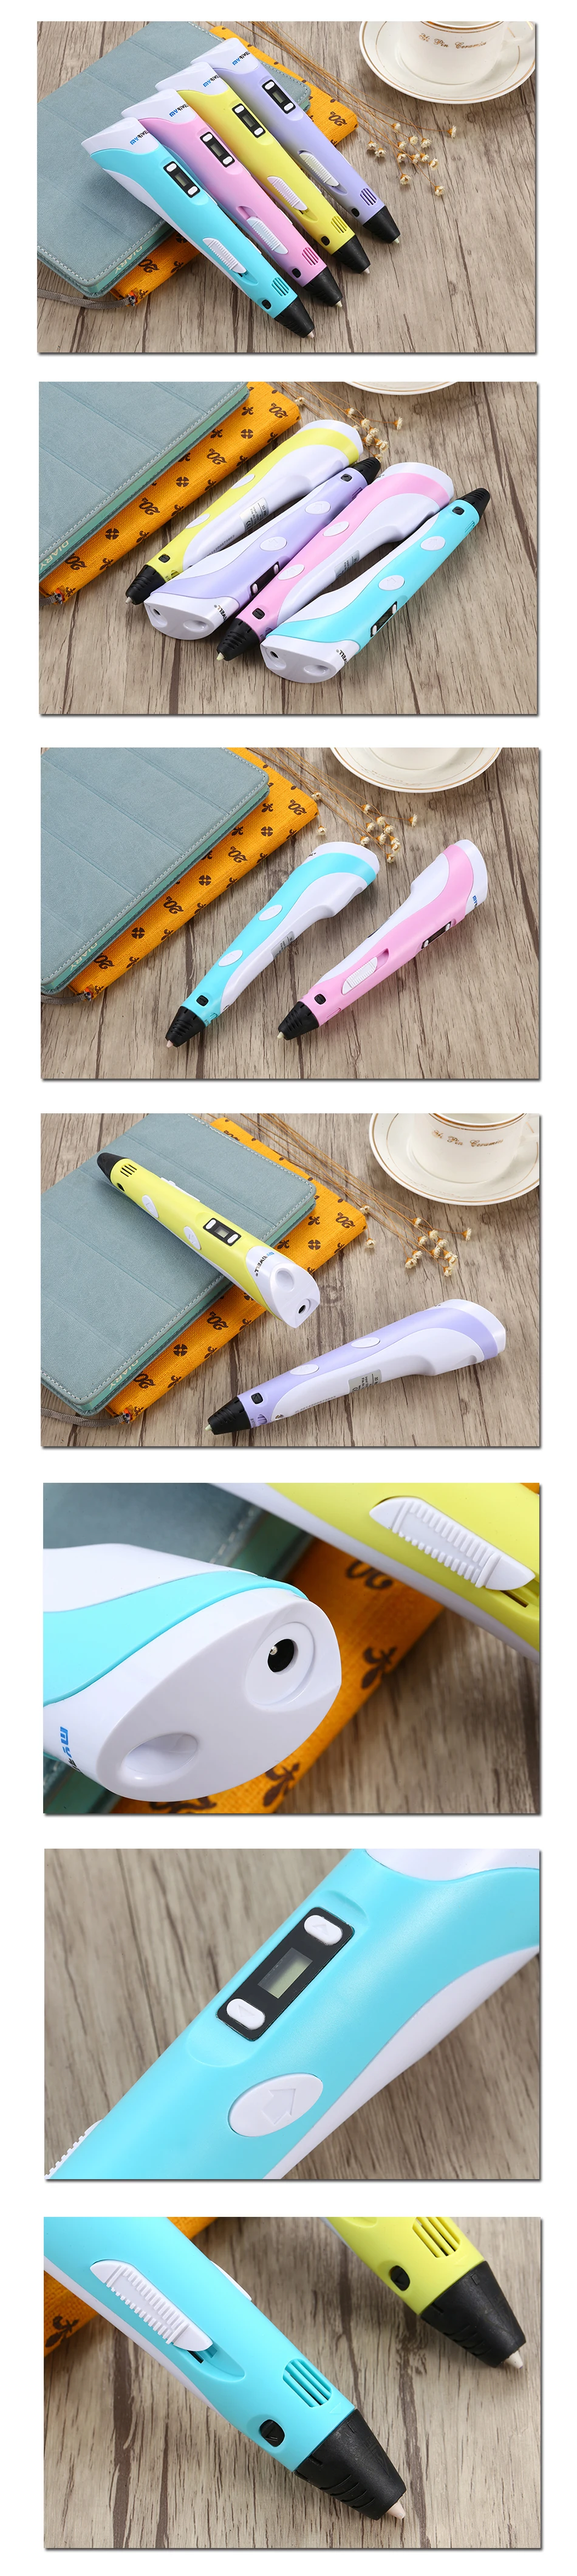 Myriwell 3D Ручка светодиодный экран DIY 3D печатная ручка 100 м ABS нить креативная игрушка подарок для детей дизайн рисунок